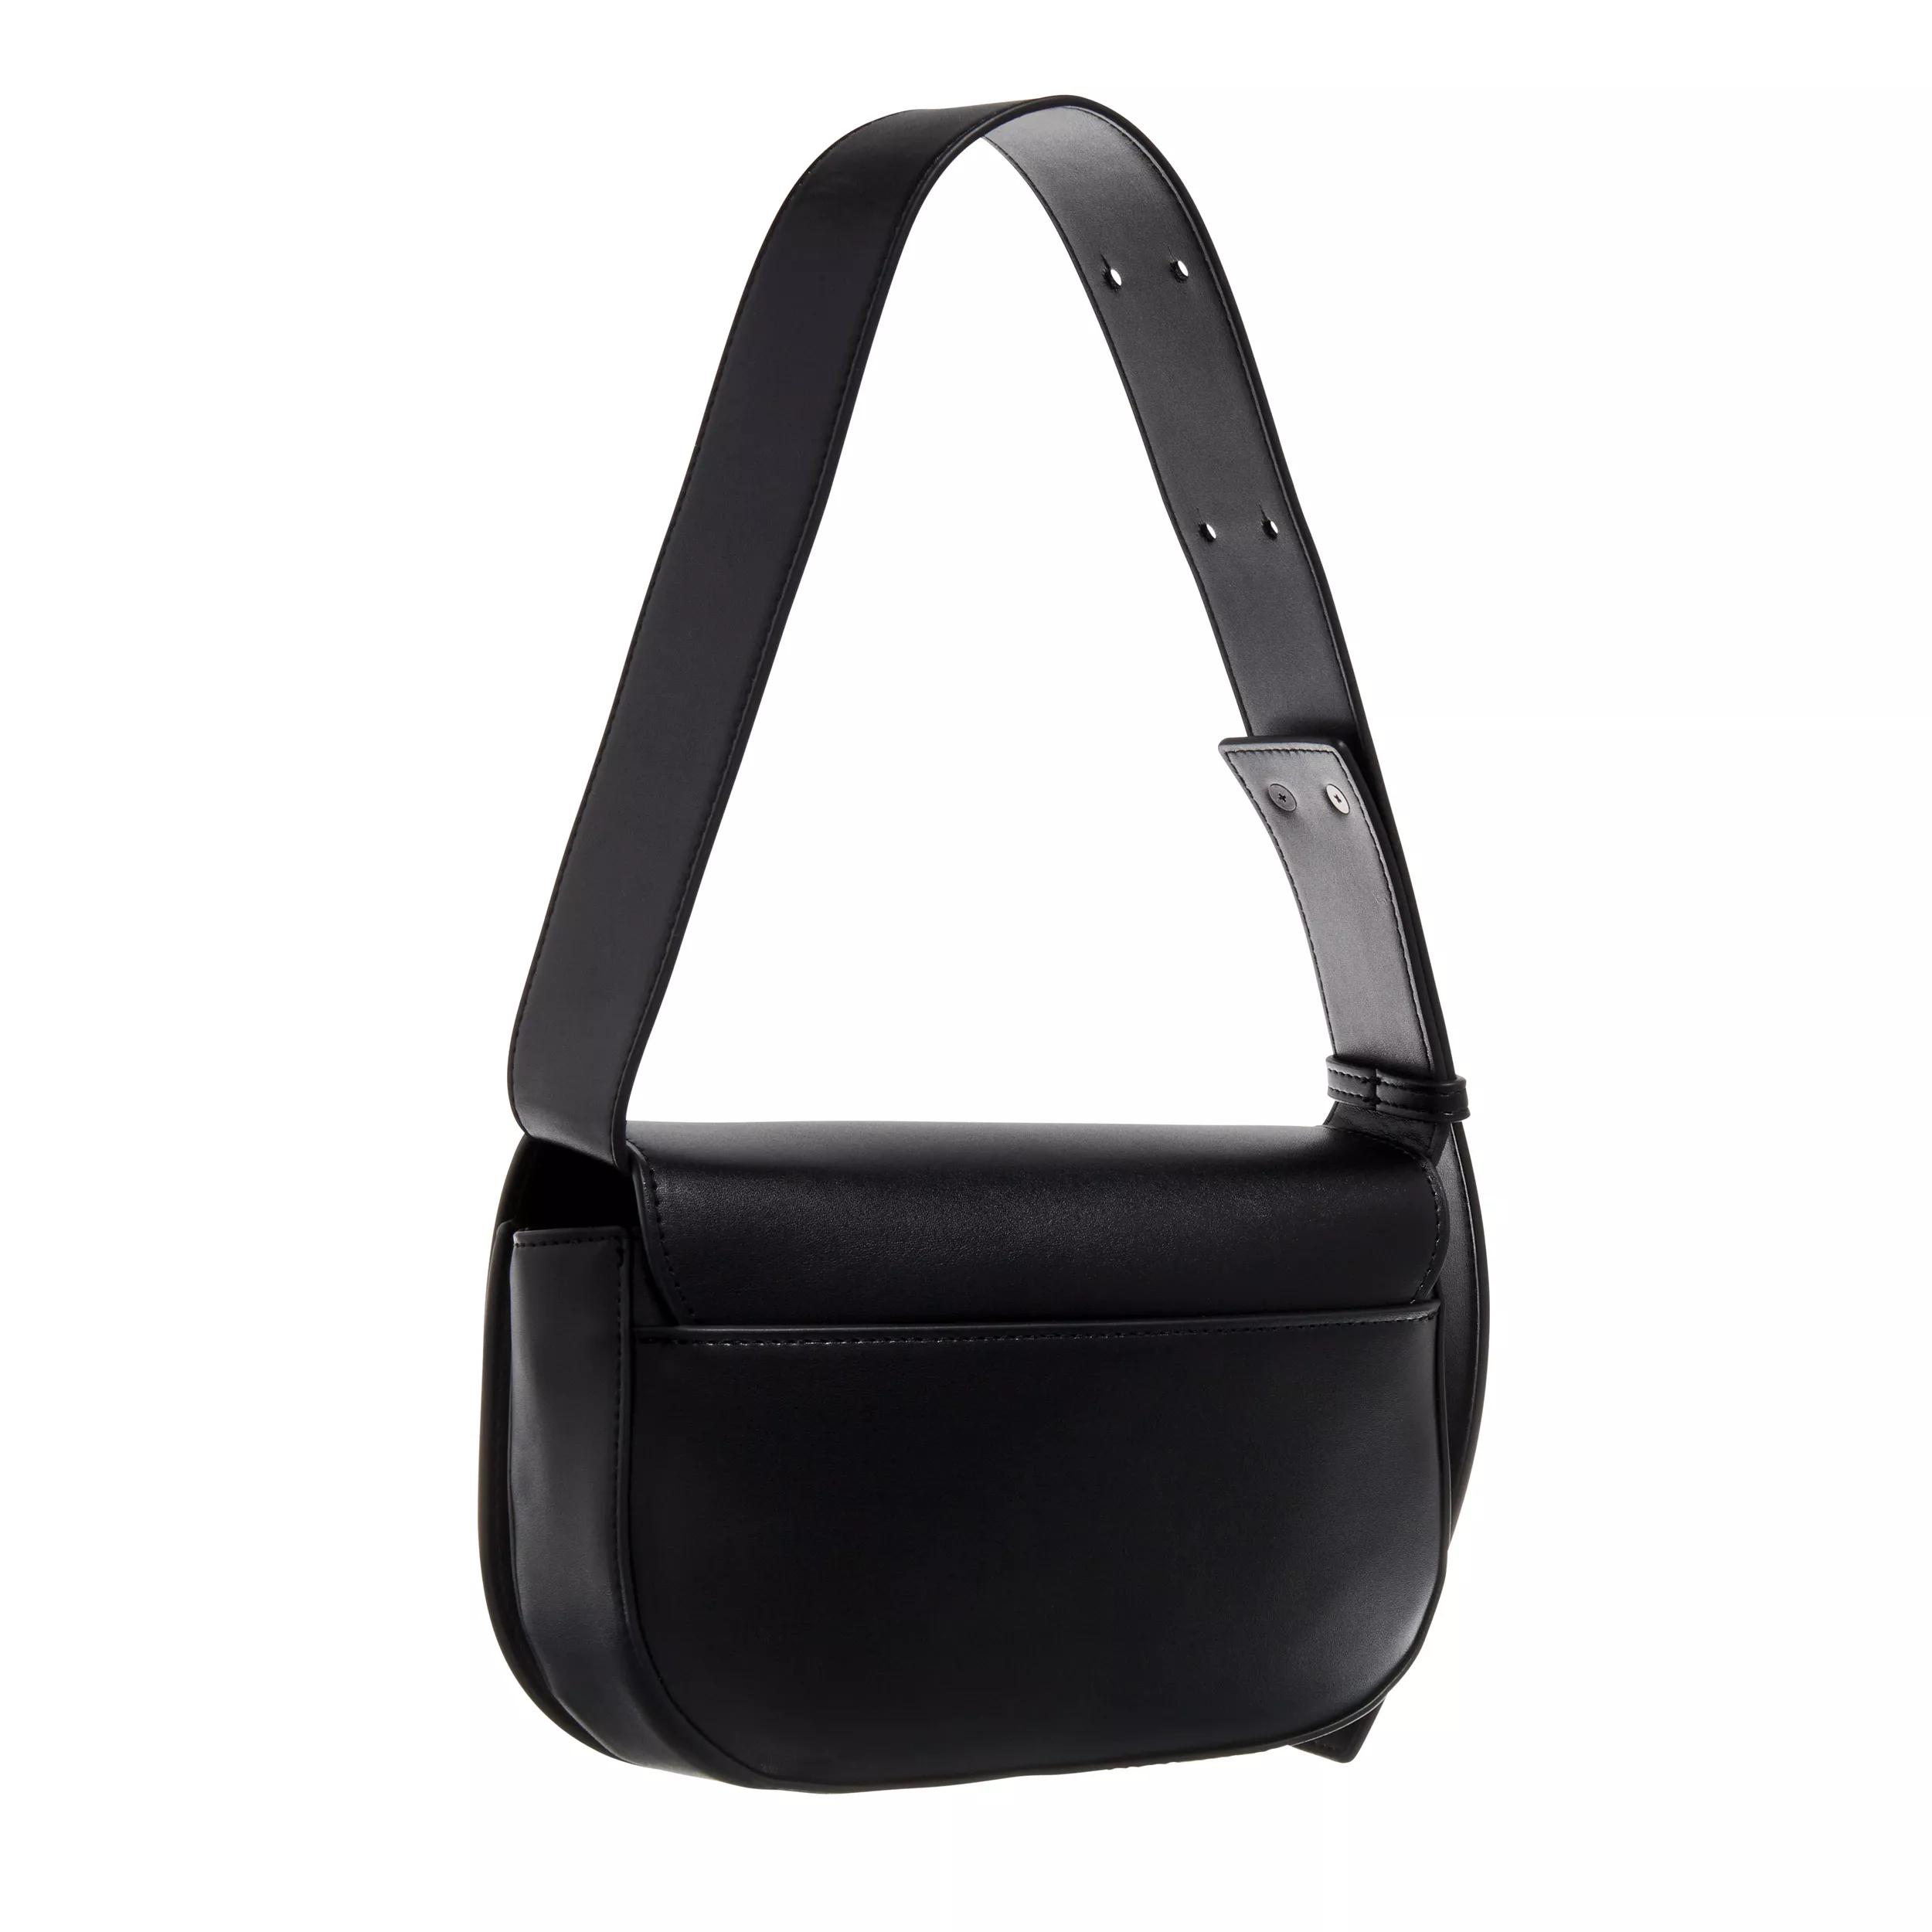 Chiara Ferragni Crossbody bags Range B Eyelike Buckle Sketch 09 Bags in zwart